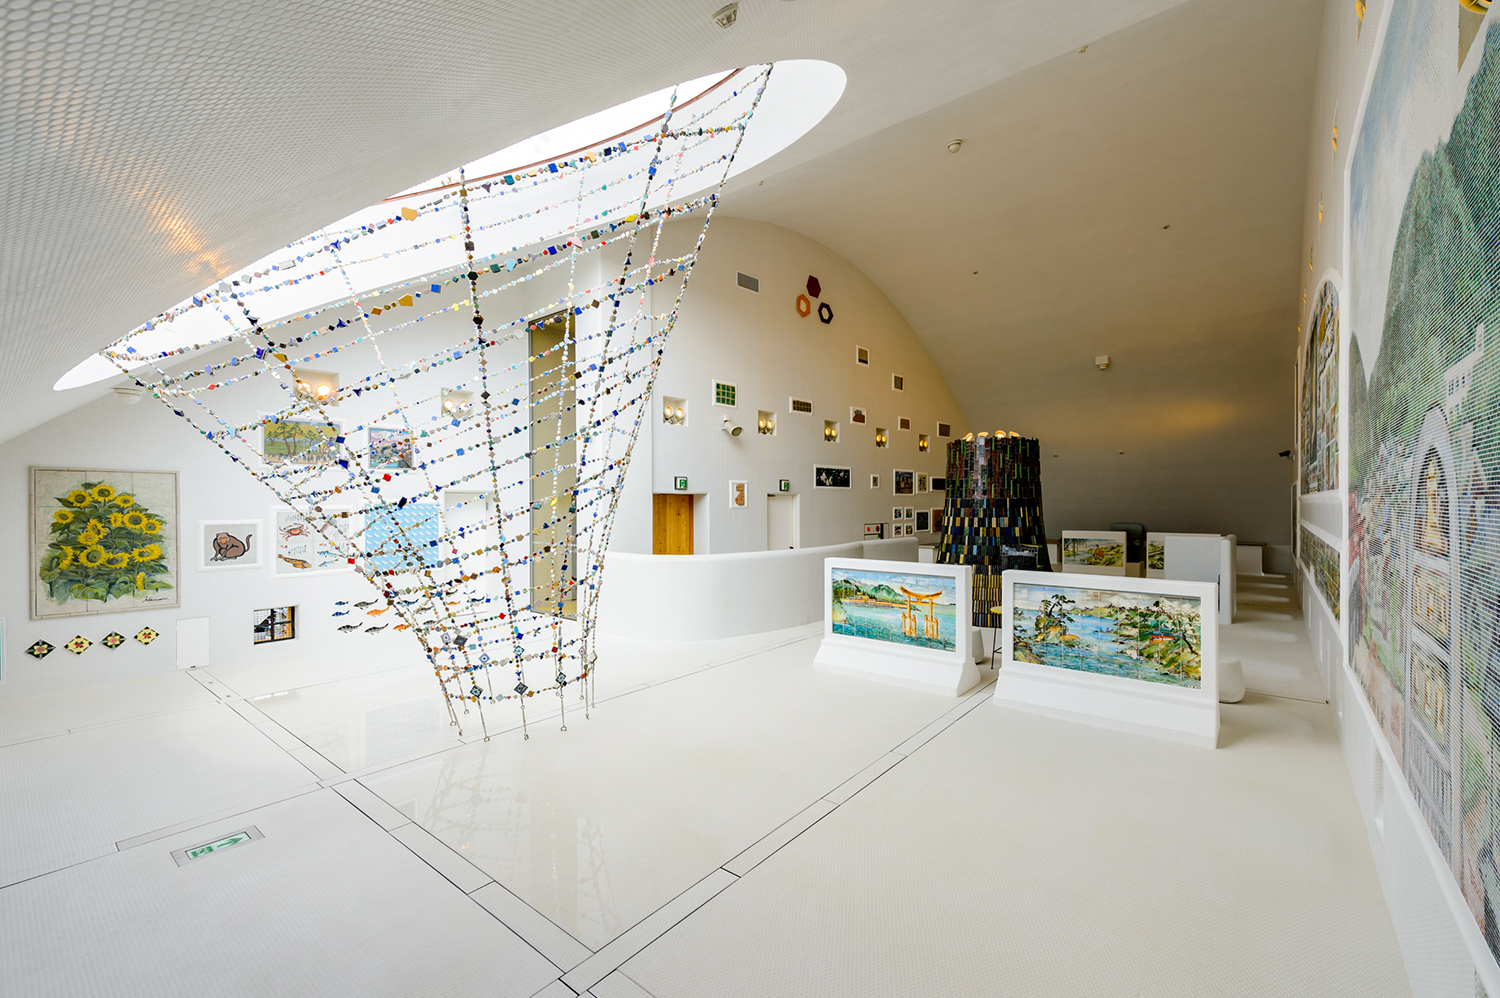 多治見市馬賽克瓷磚博物館入館、500日元製作體驗